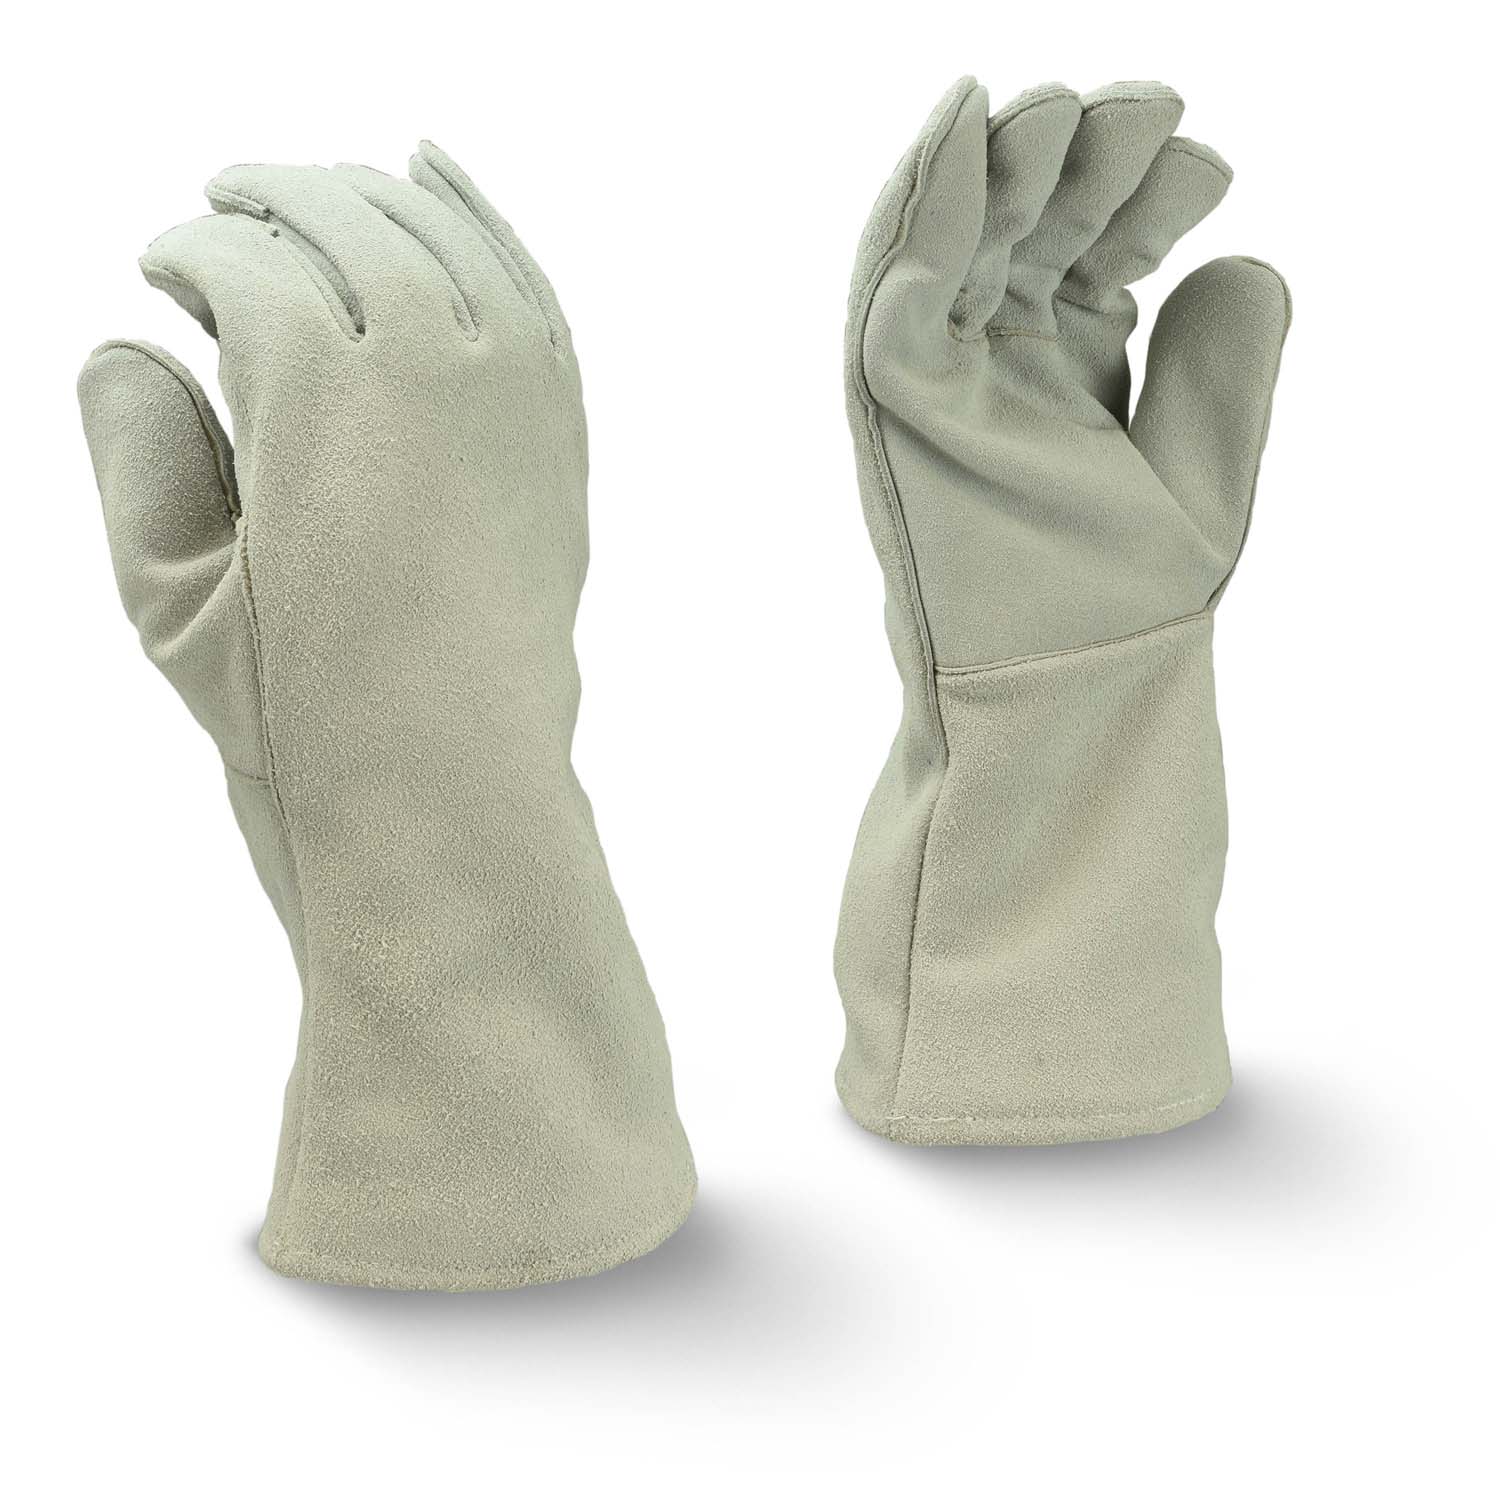 PIP 8800-XL Premium Leather-Palm Work Gloves, safety cuffs; size